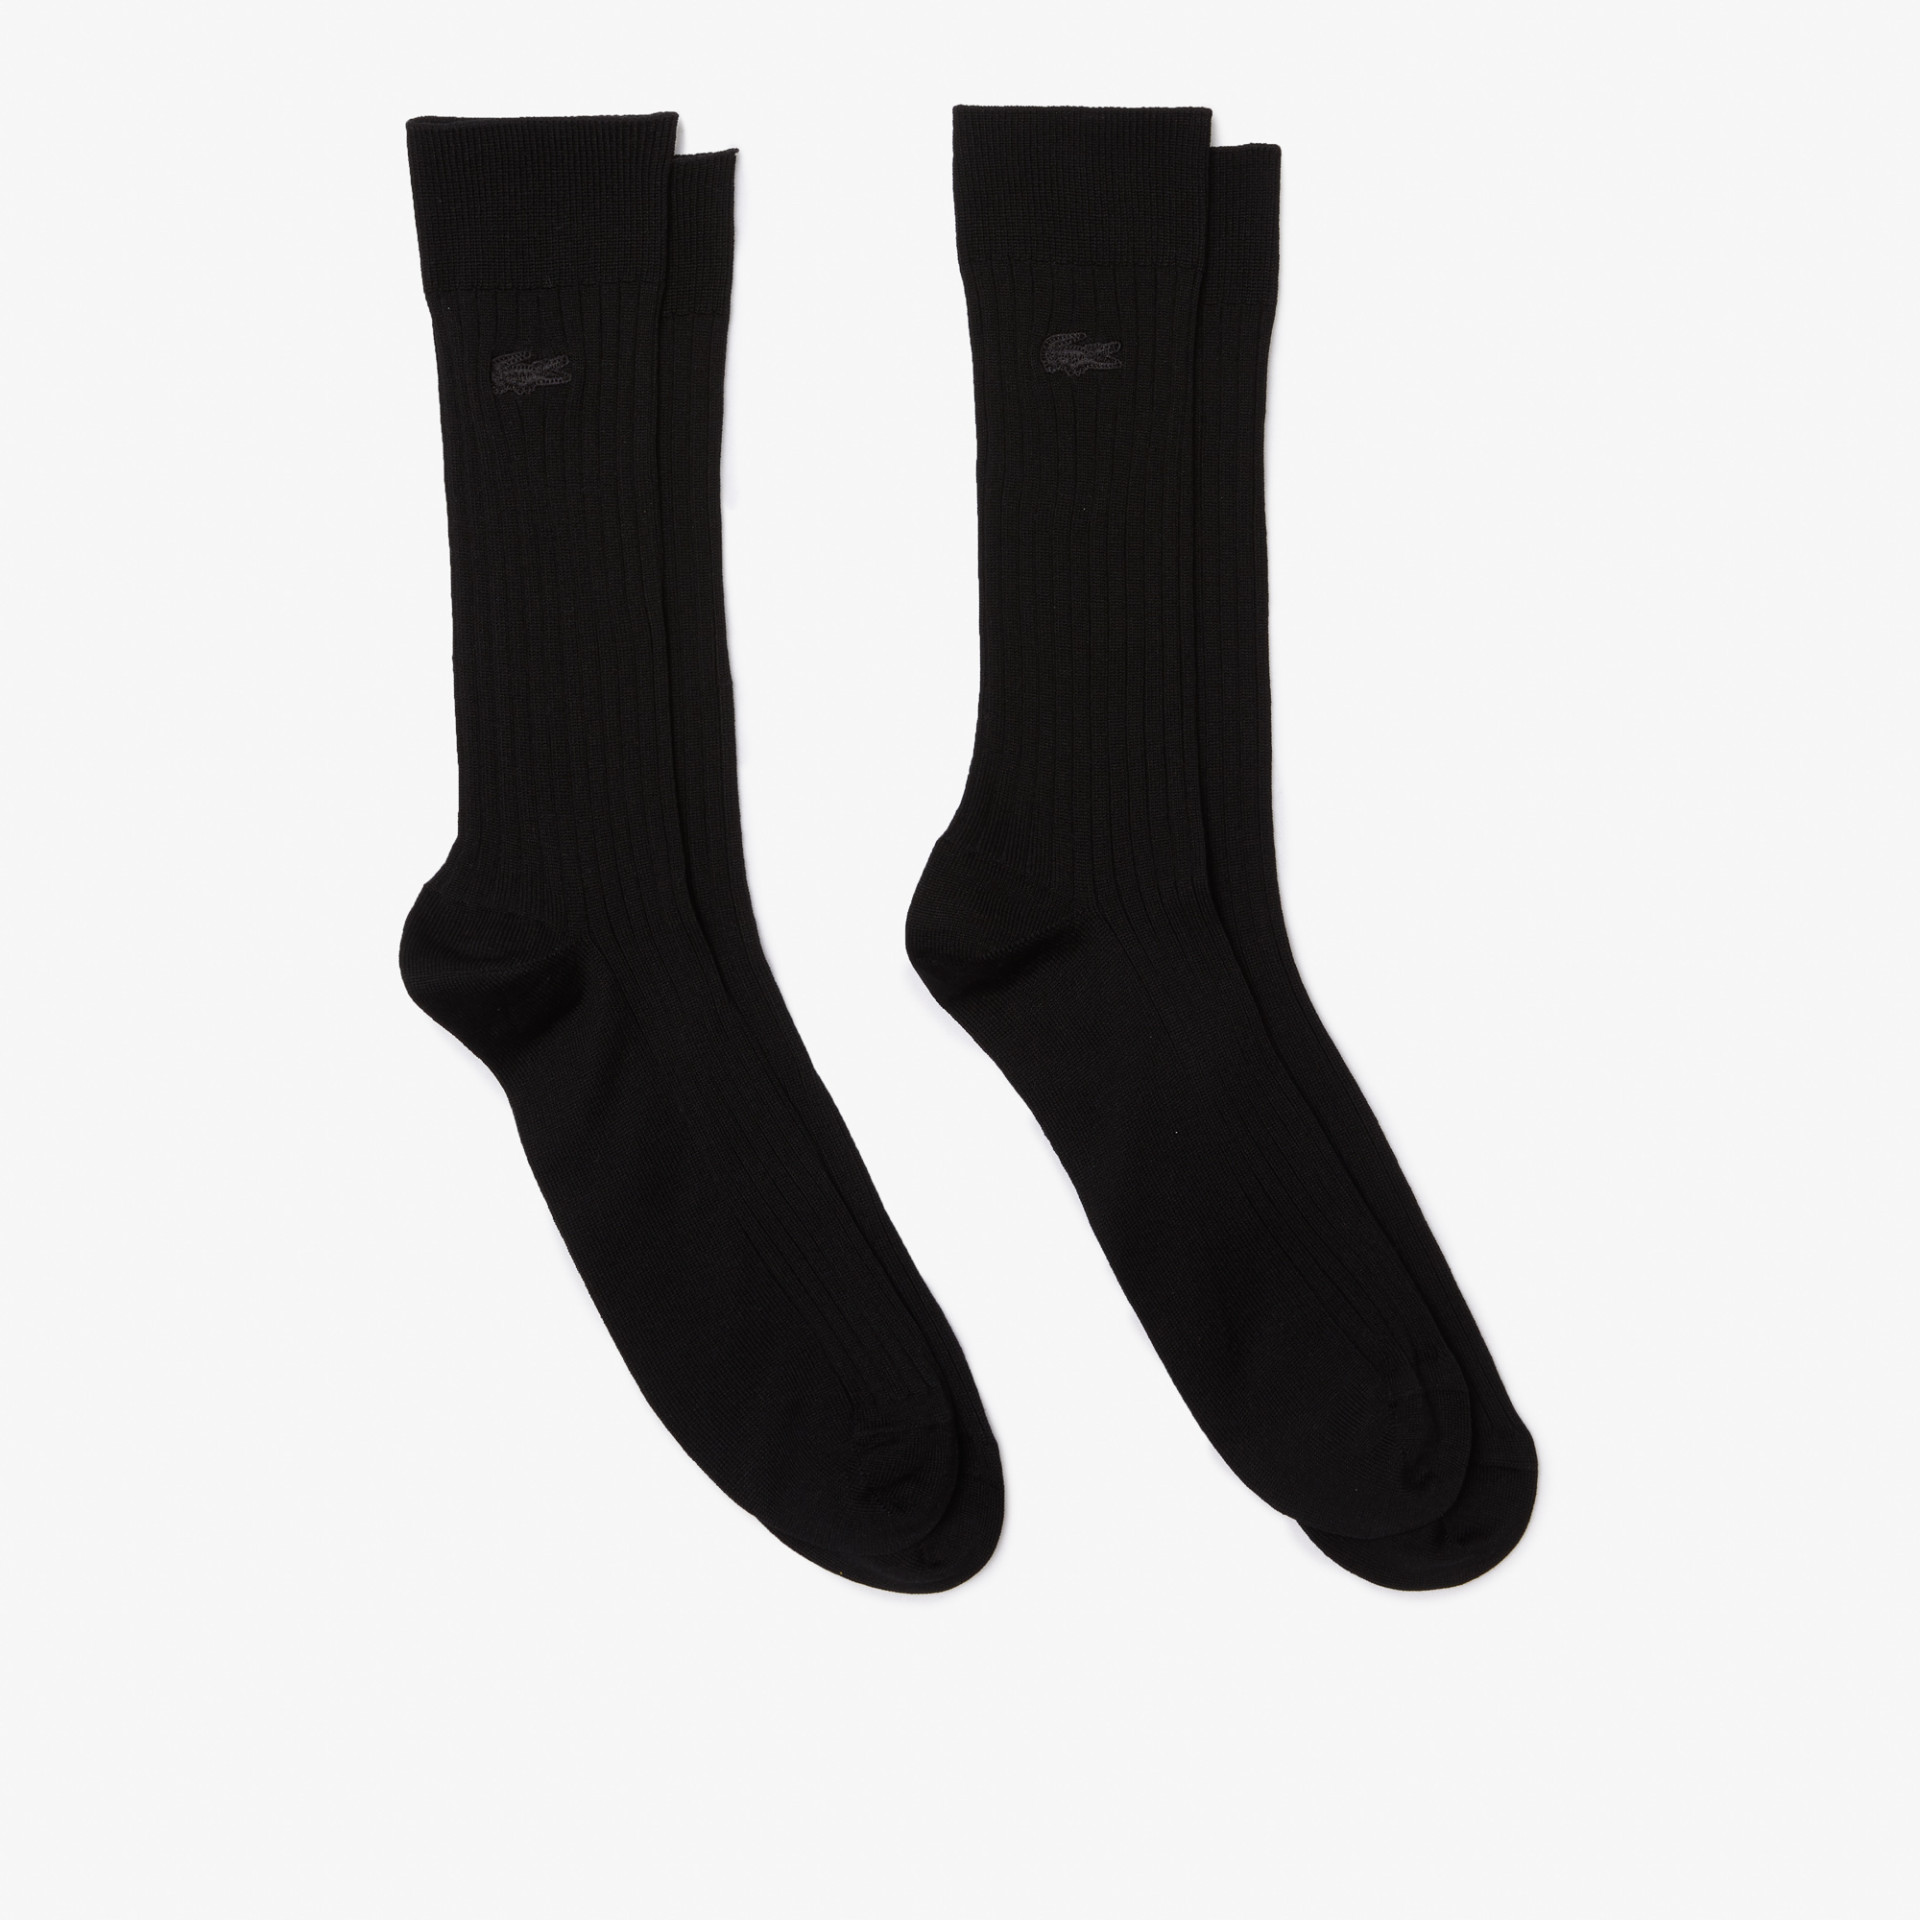 Lot de 2 paires de chaussettes hommes basses en coton bio noir